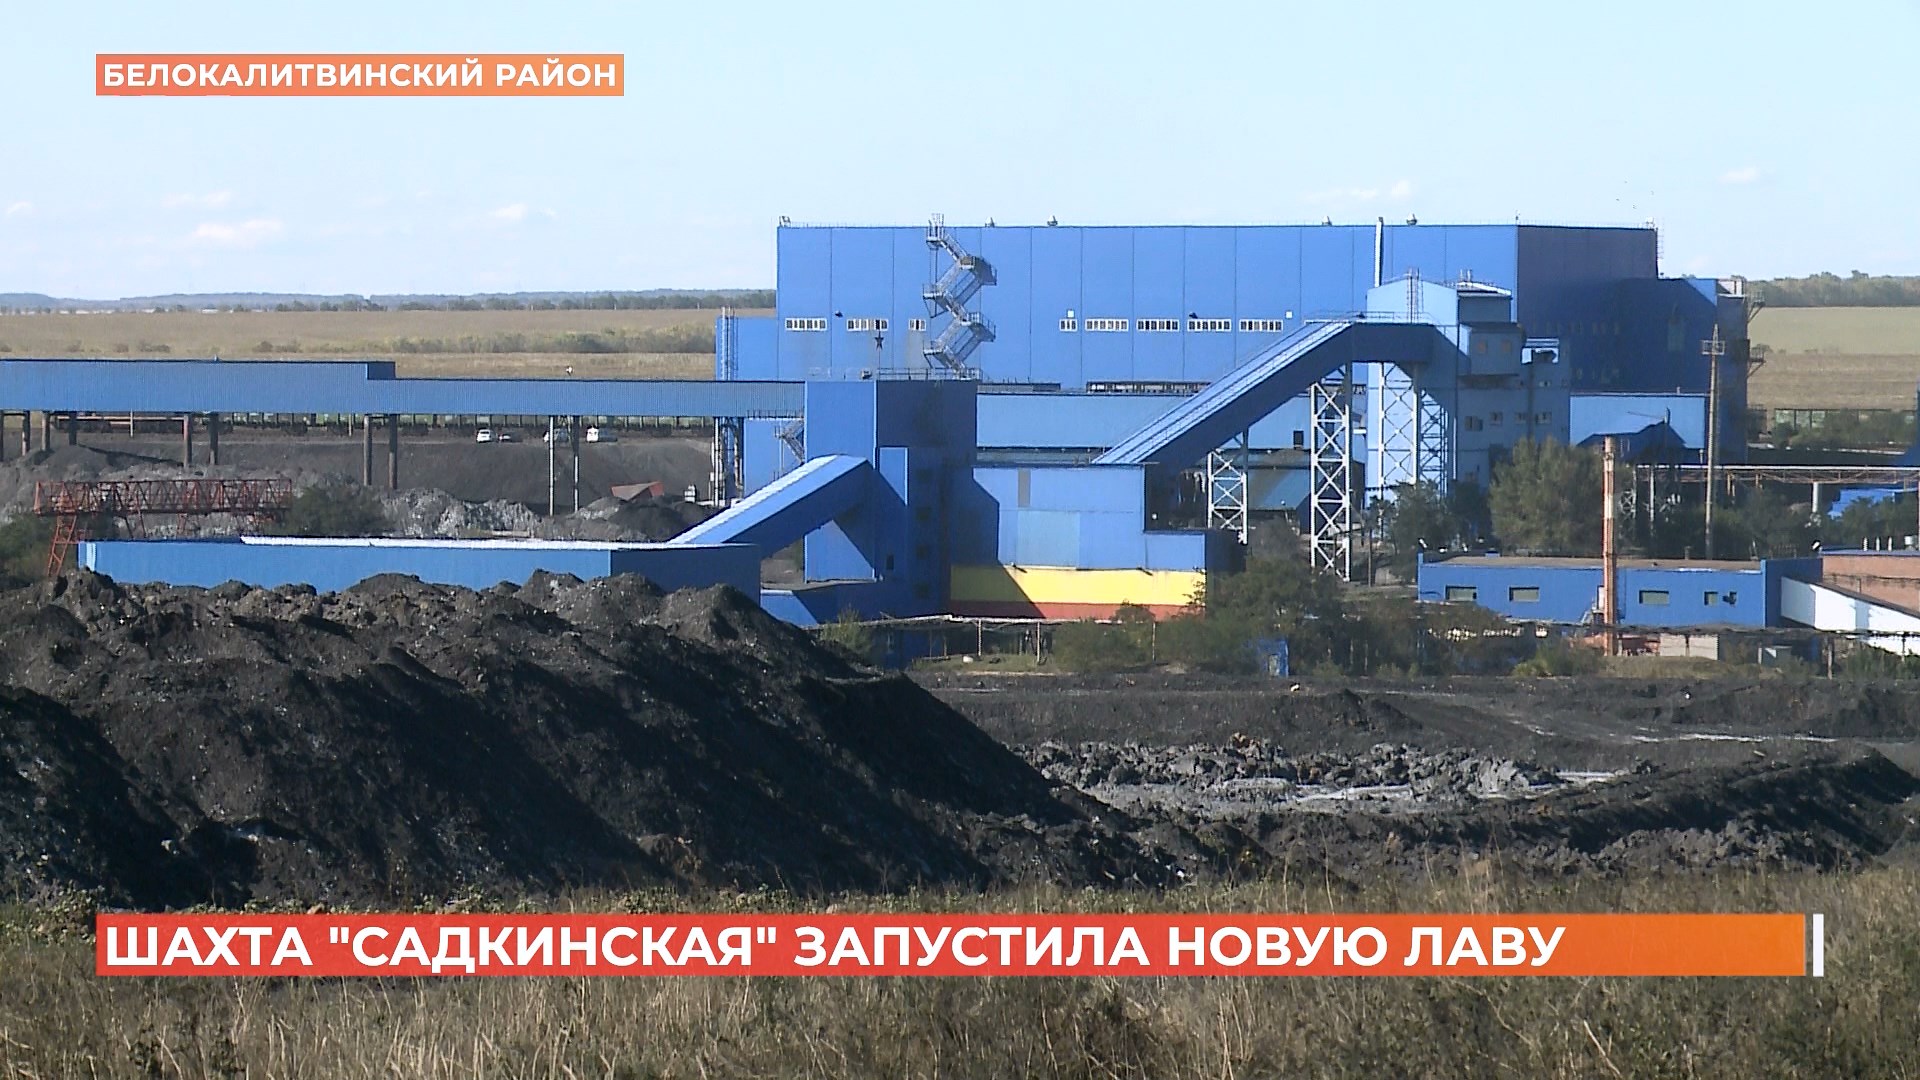 Шахта «Садкинская» в Белокалитвинском районе запустила новую лаву